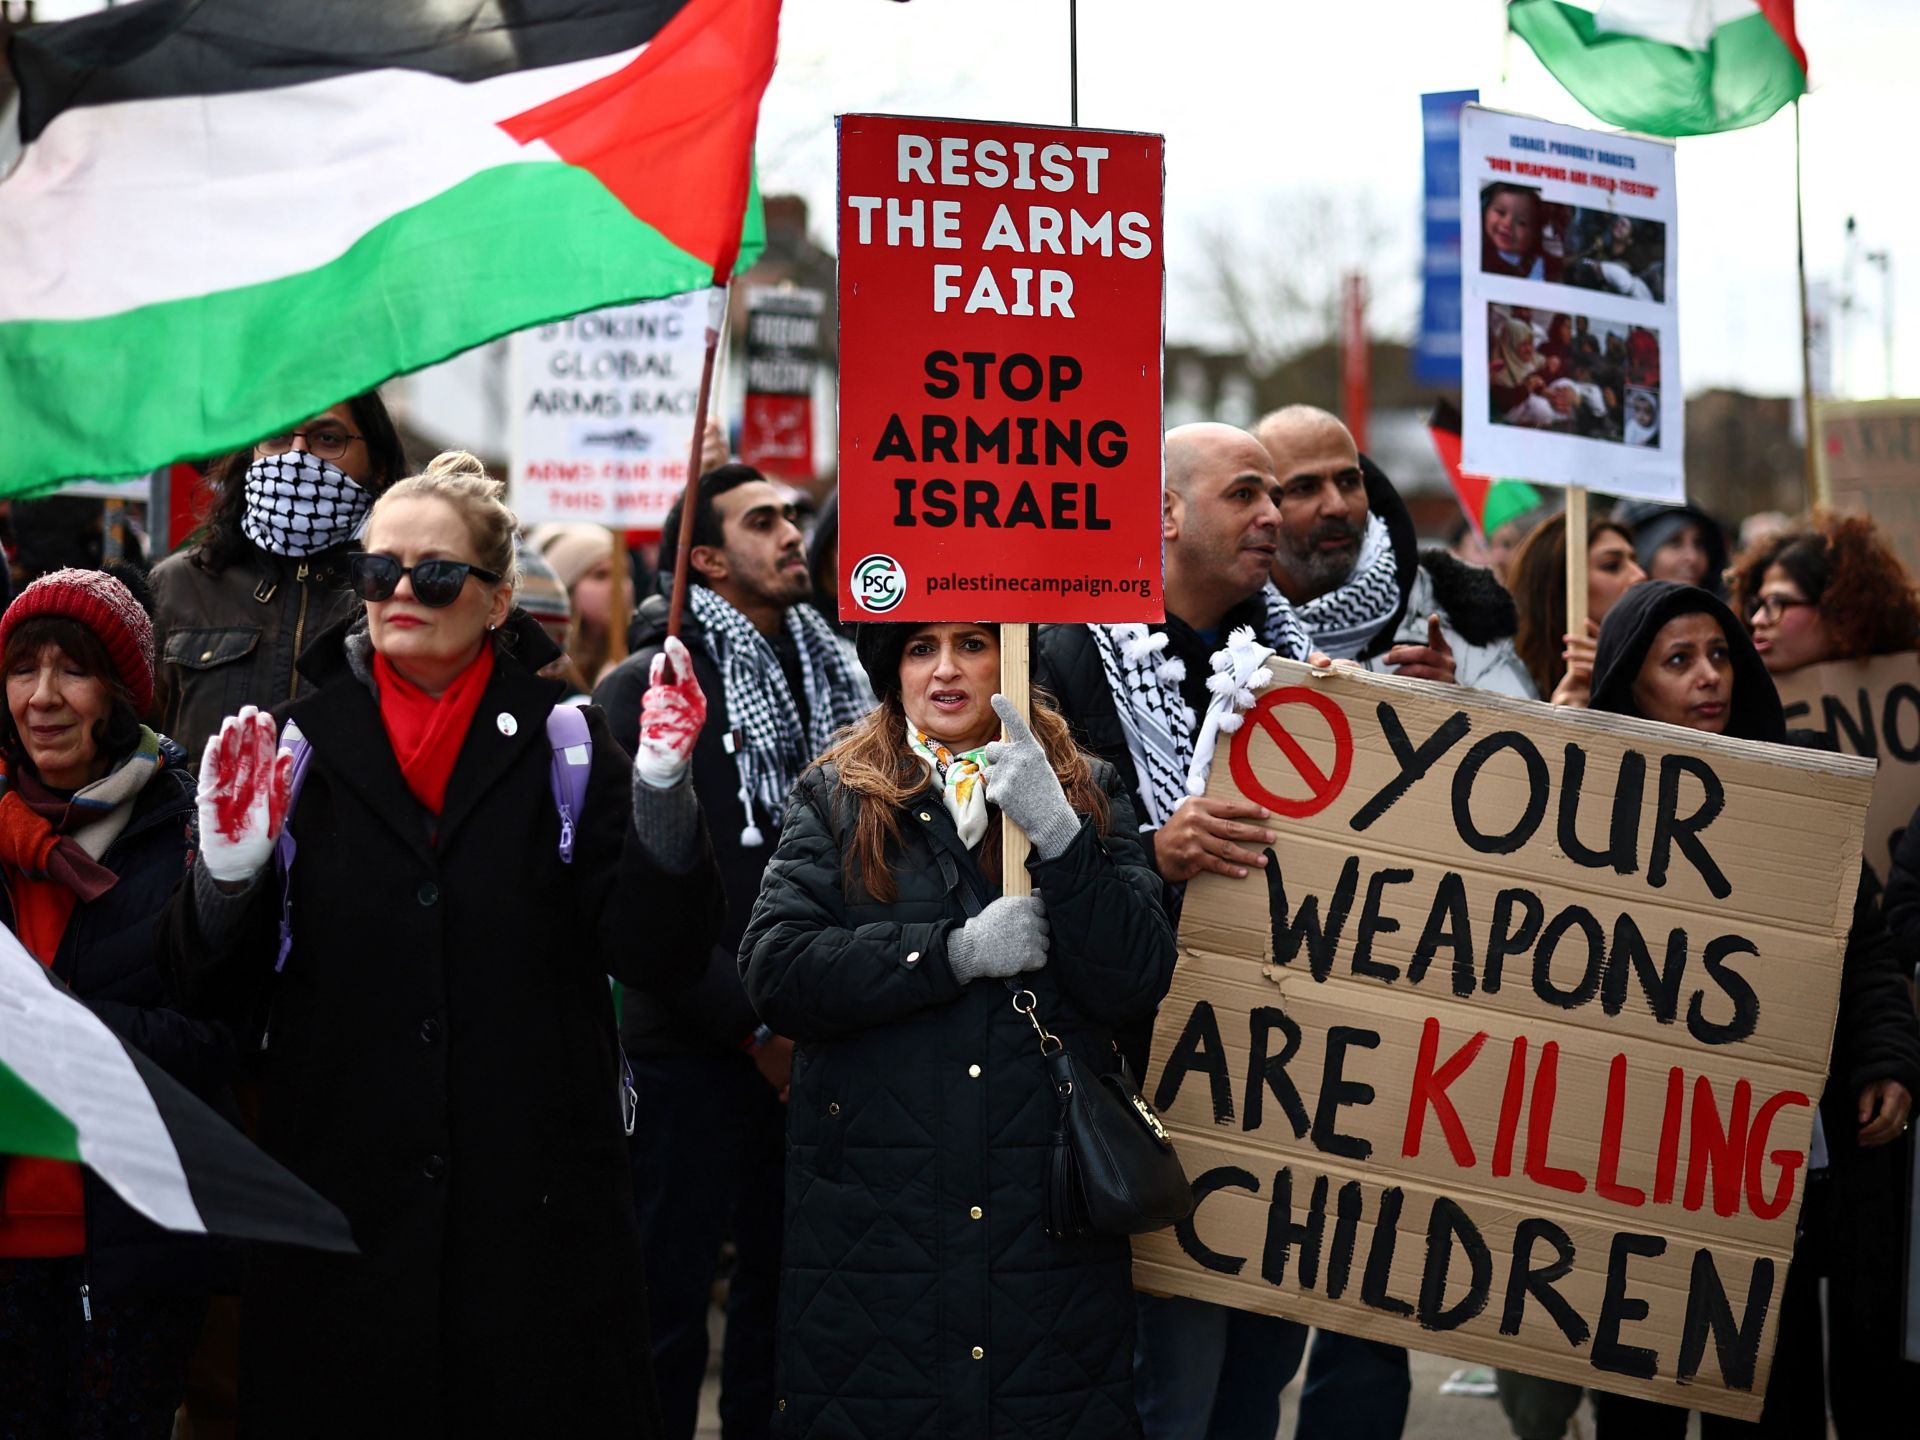 المحكمة العليا في بريطانيا ترفض دعوى لوقف تصدير الأسلحة لإسرائيل | أخبار – البوكس نيوز